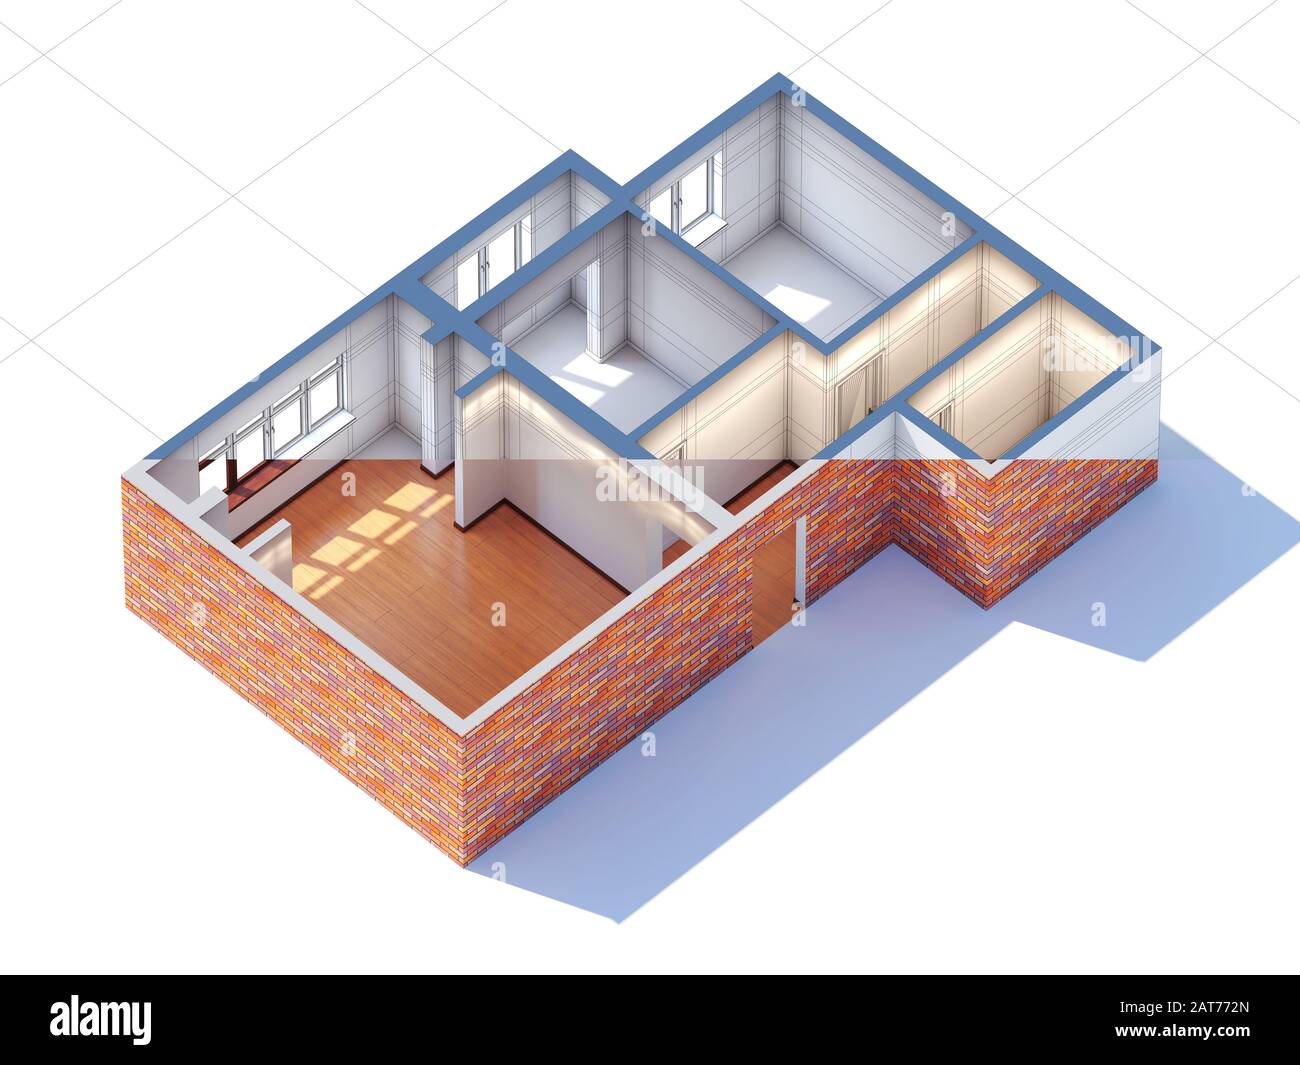 Inneneinrichtung des Hauses Planung Skizze Entwurf 3D-Rendering Halbentwurf und Halbfertig (allgemeine Luftaufnahme) Stockfoto